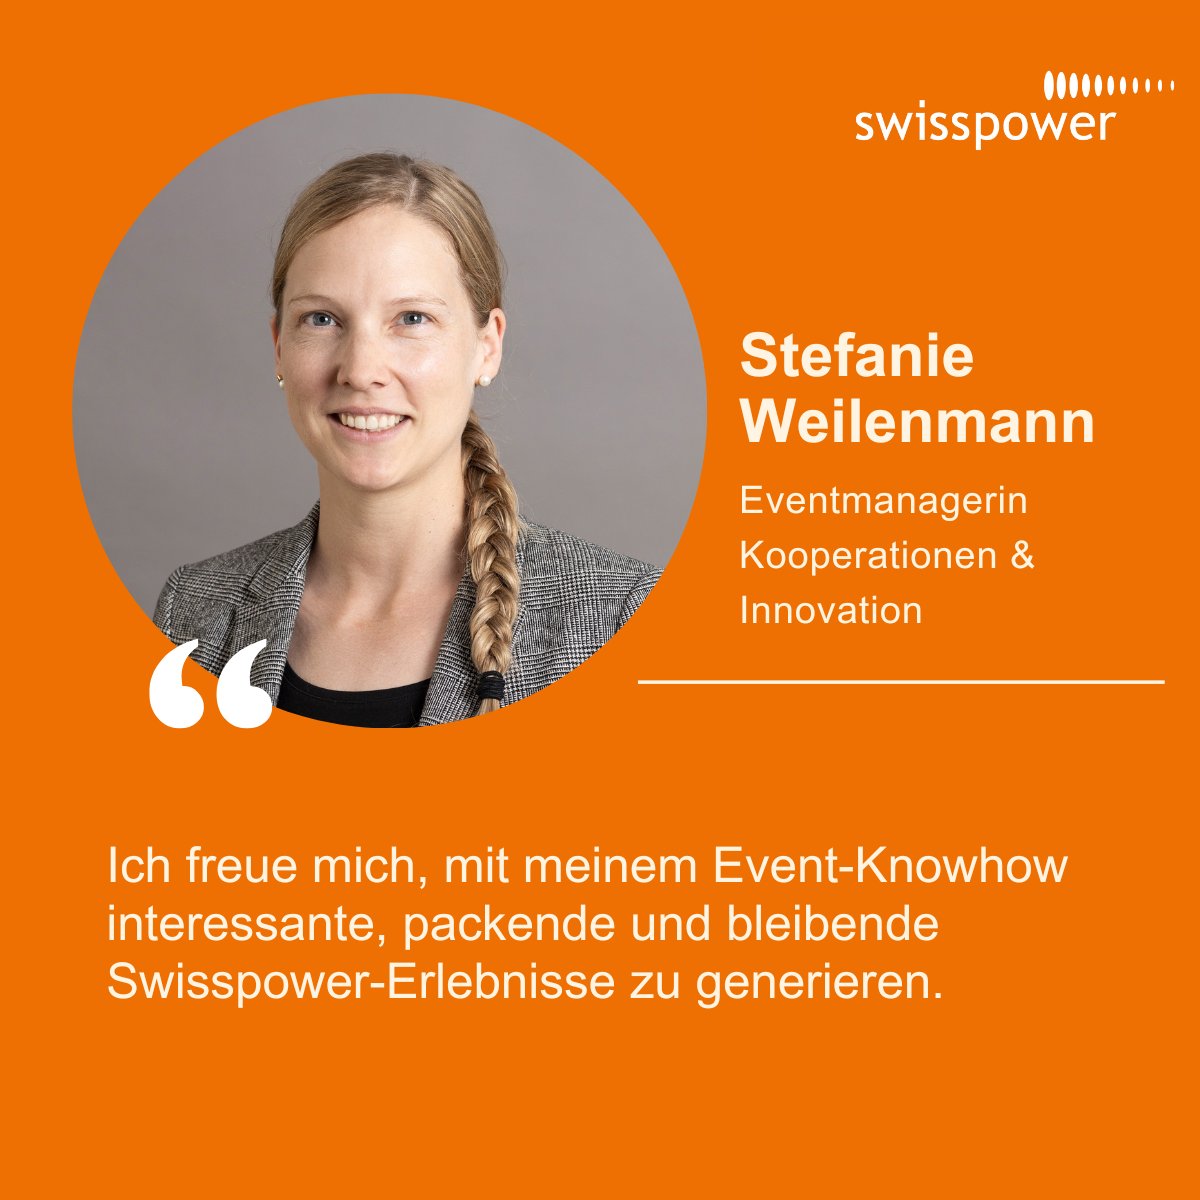 In den letzten Wochen durften wir bei Swisspower mehrere Neuzugänge willkommen heissen. Stefanie Weilenmann ist seit Mitte Mai als Eventmanagerin Kooperationen & Innovation bei Swisspower tätig und kümmert sich dort unter anderem um die Durchführung des 'Energy Start-up Day'.